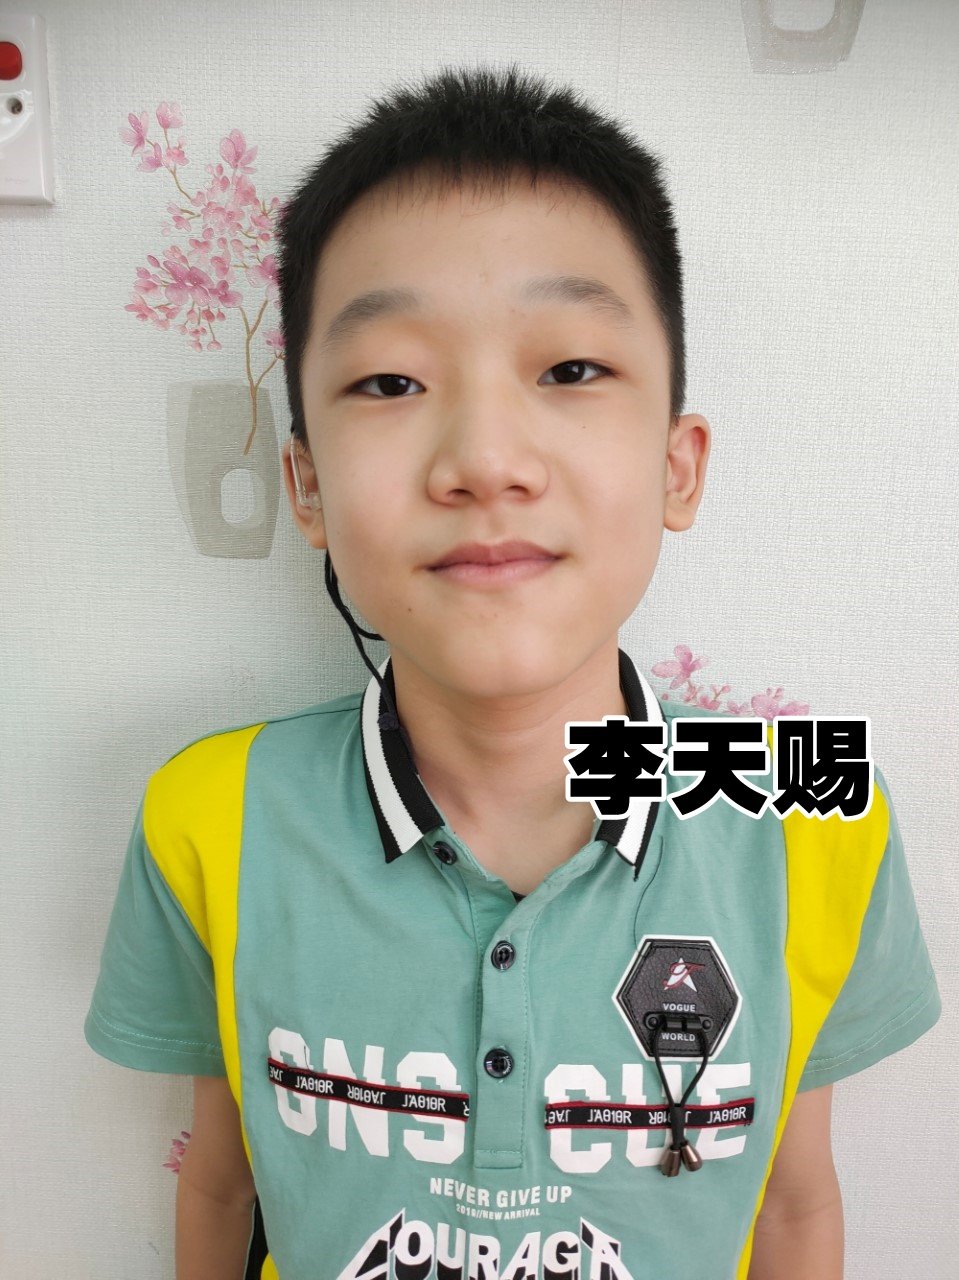 12岁李天赐要重现“声”机回归有声世界，急需善心人士捐助10万6700令吉植入电子耳蜗。